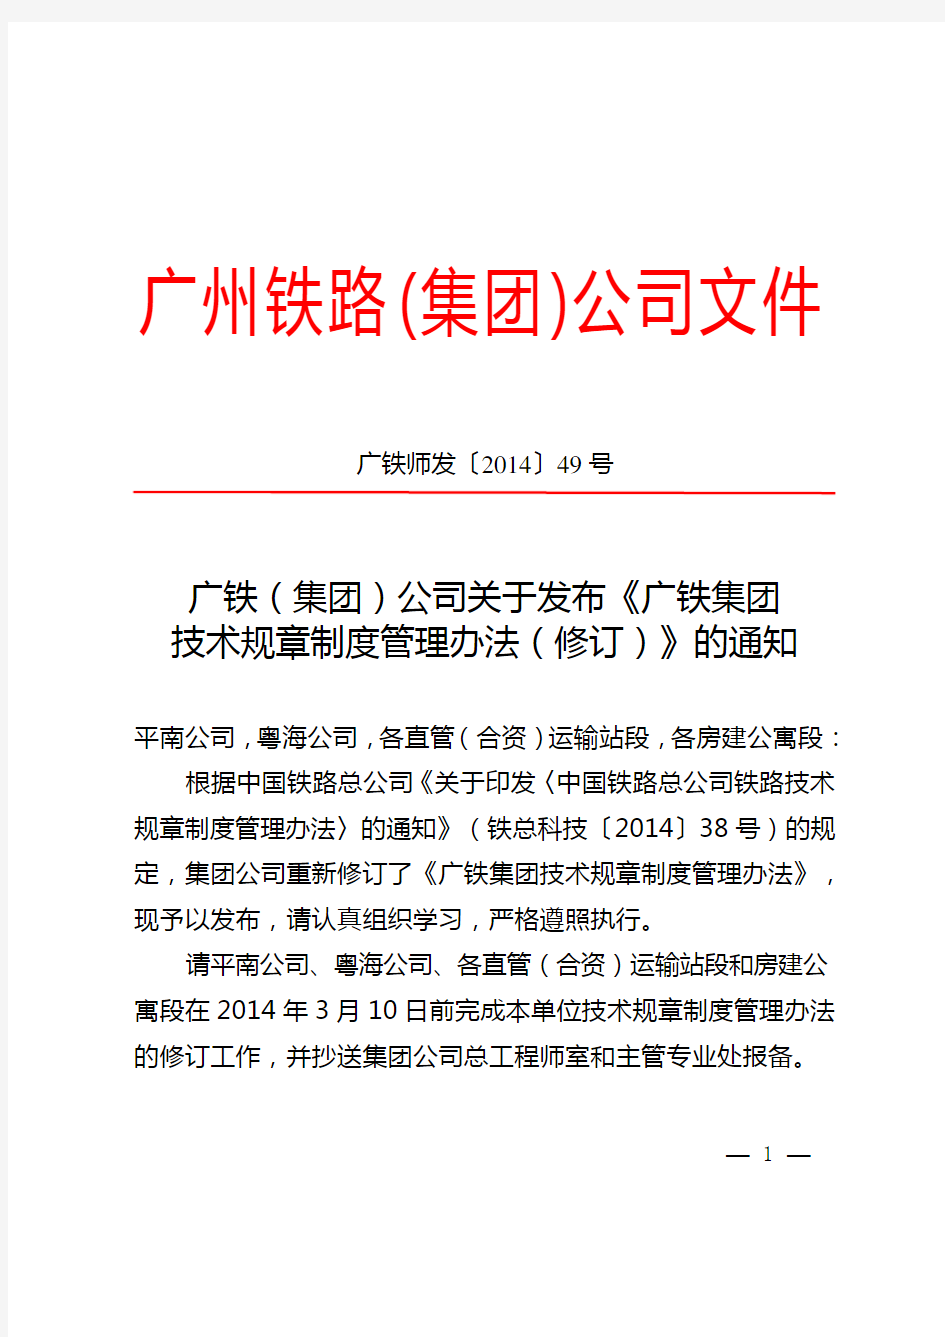 (广铁师发〔2014〕49号)广铁(集团)公司关于发布《广铁集团技术规章制度管理办法(修订)》的通知